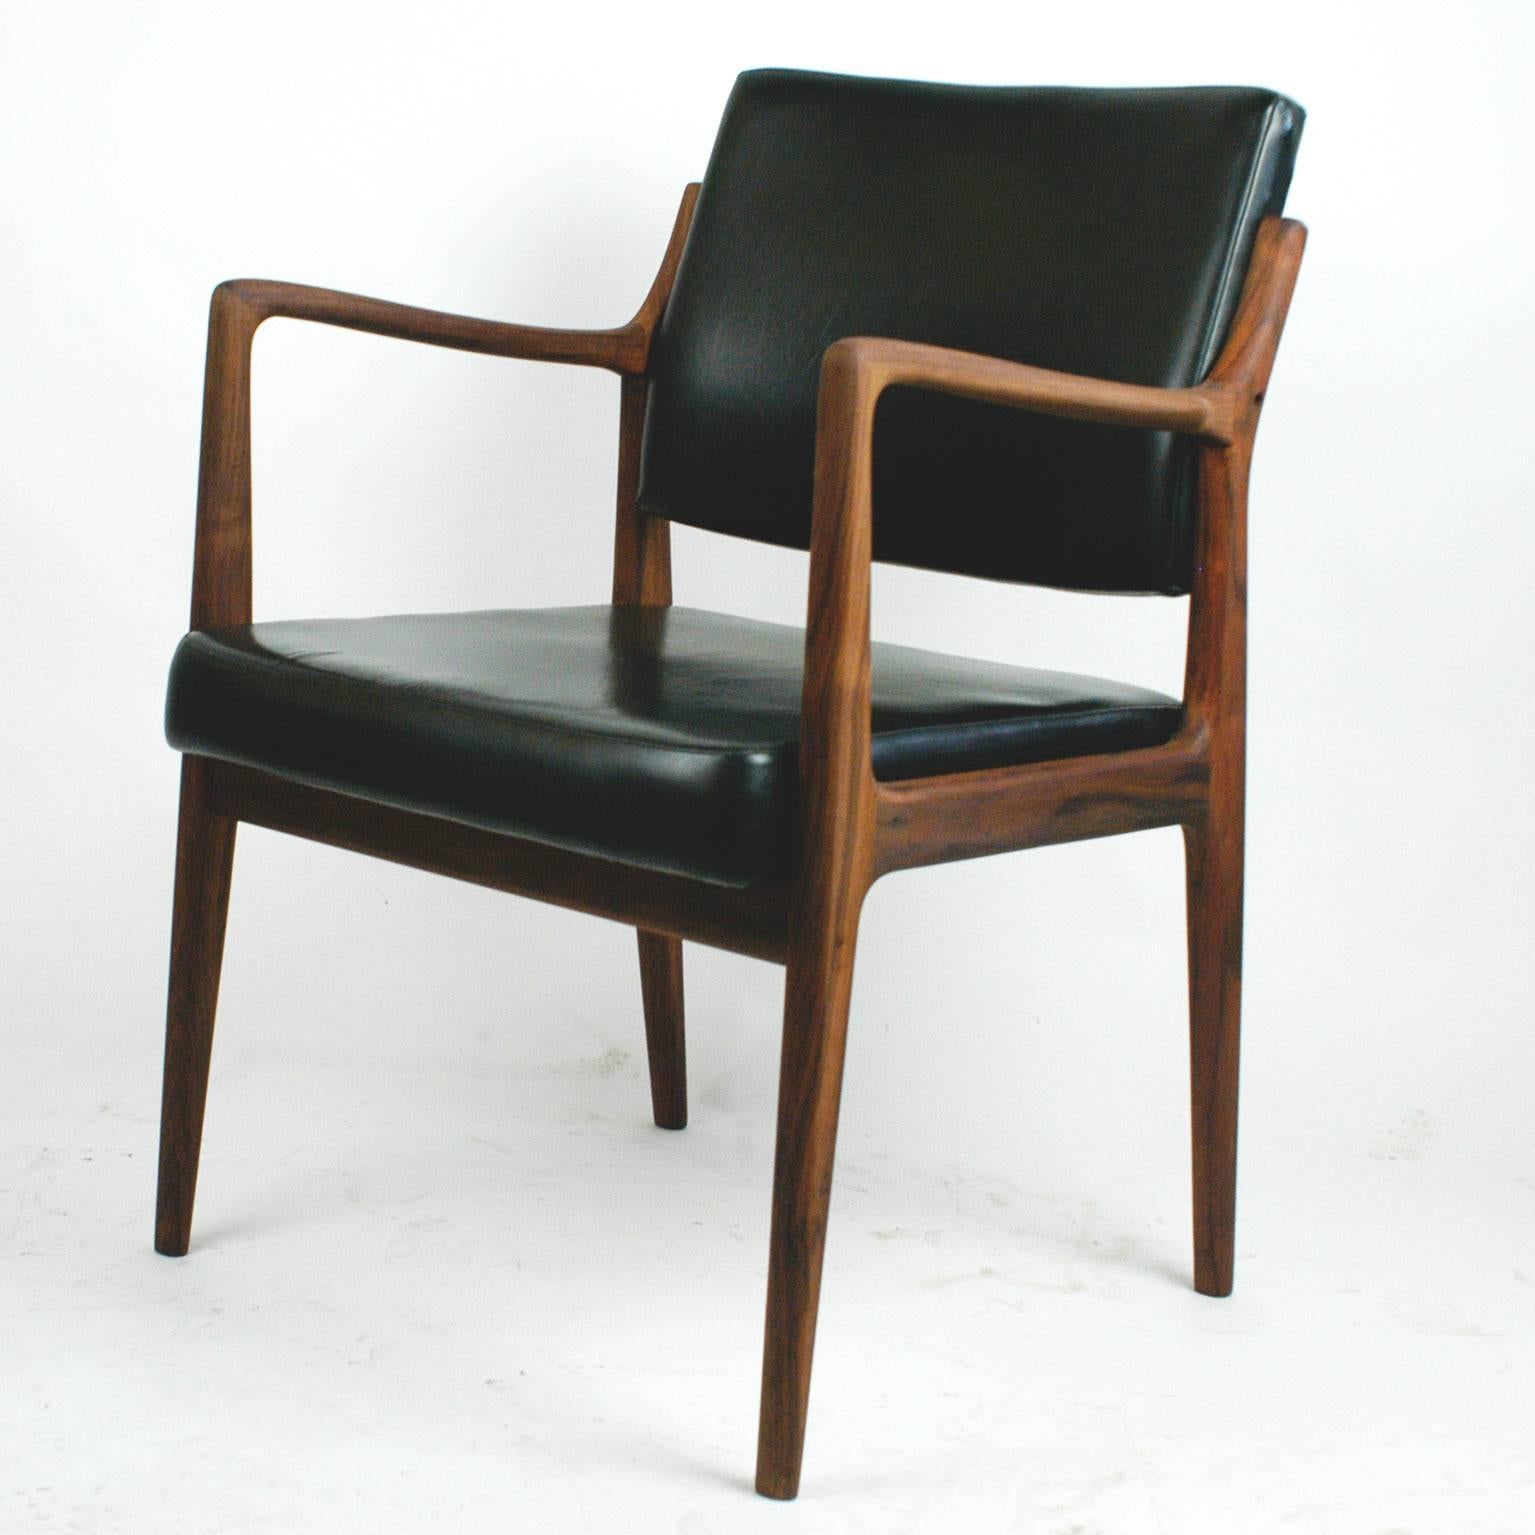 Skandinavisch moderner Sessel aus Teakholz und schwarzem Kunstleder von K. E. Ekselius 1